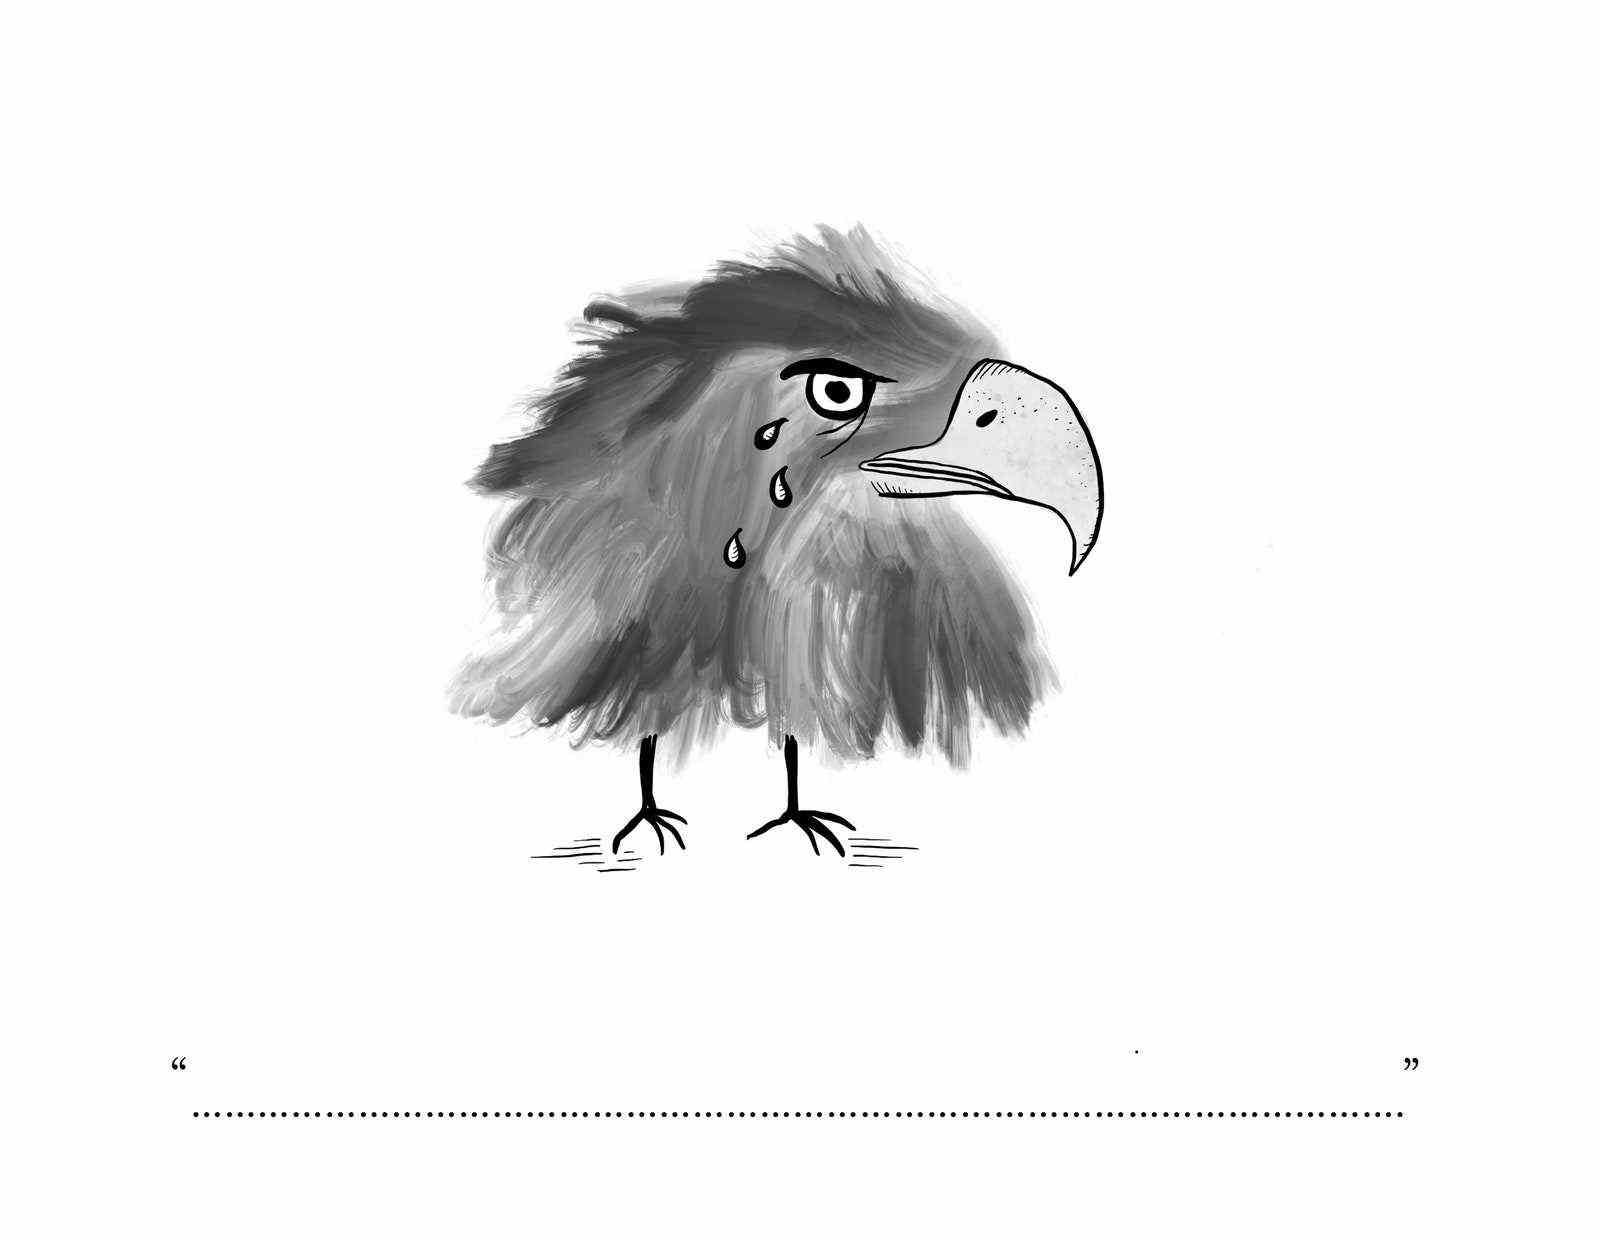 Adler mit großem Kopf, regelmäßigen Krallen und ohne Körper.